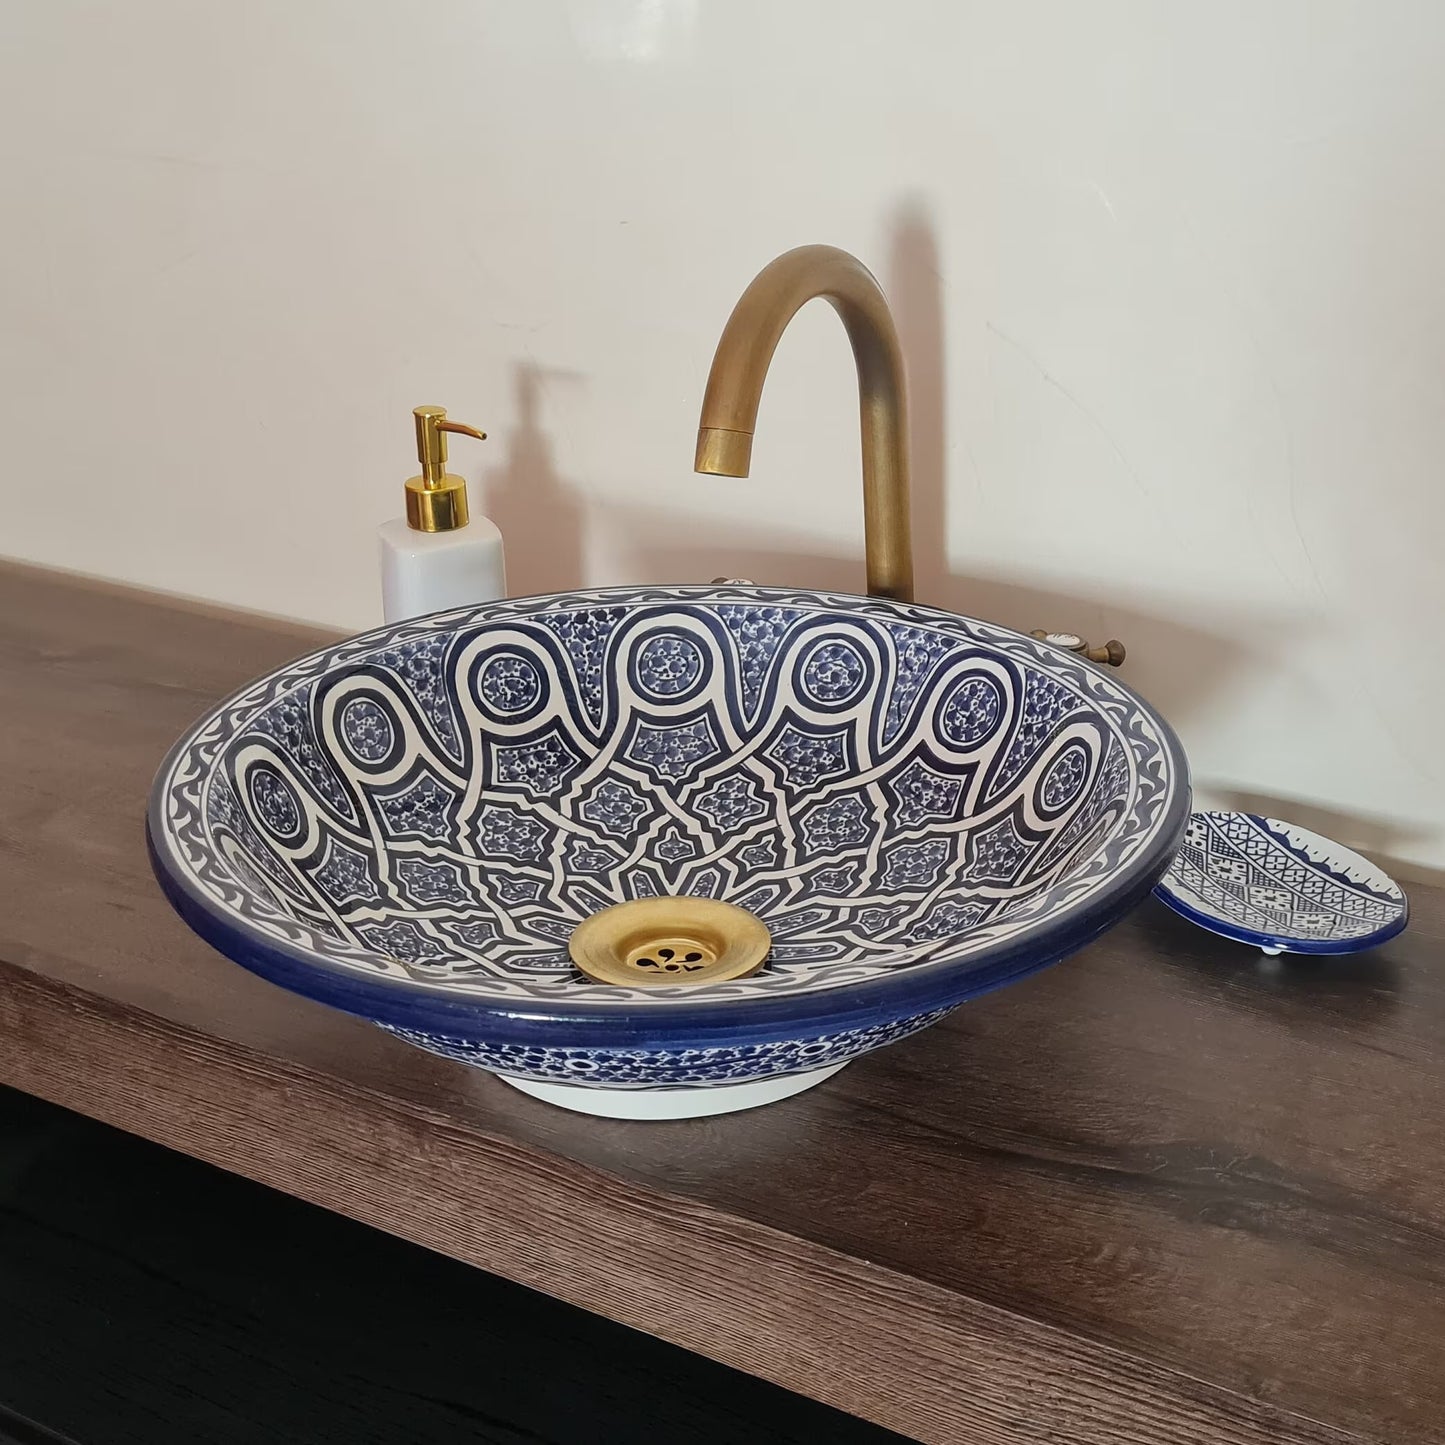 Moroccan sink | moroccan ceramic sink | bathroom sink | moroccan bathroom basin | cloakroom basin | Bleu sink #163